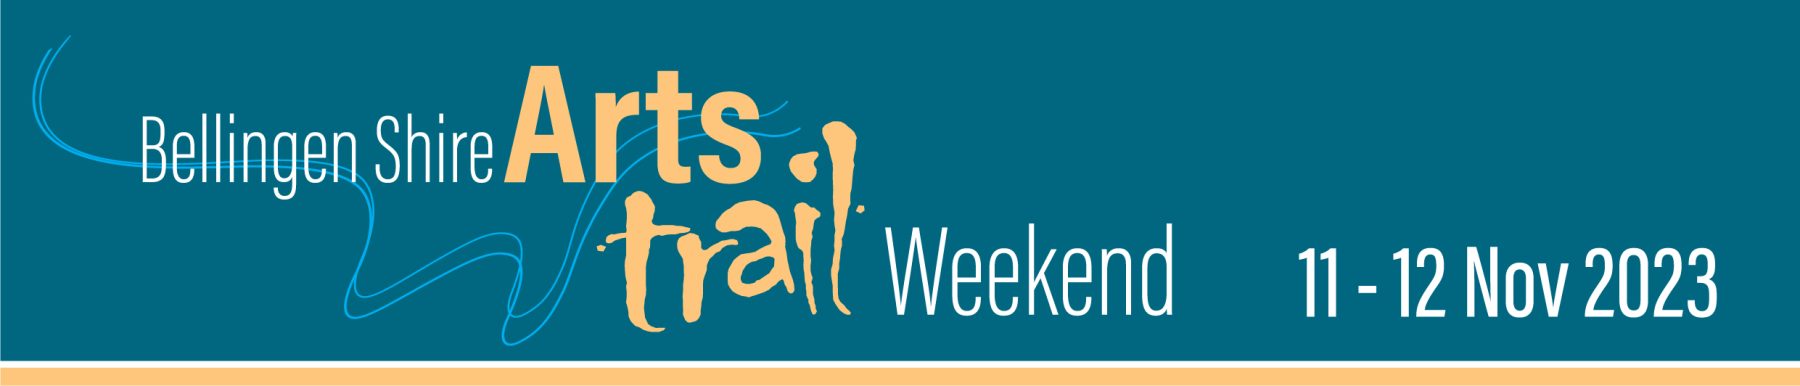 Arts Trail Weekend_banner_v2 (003) final revised